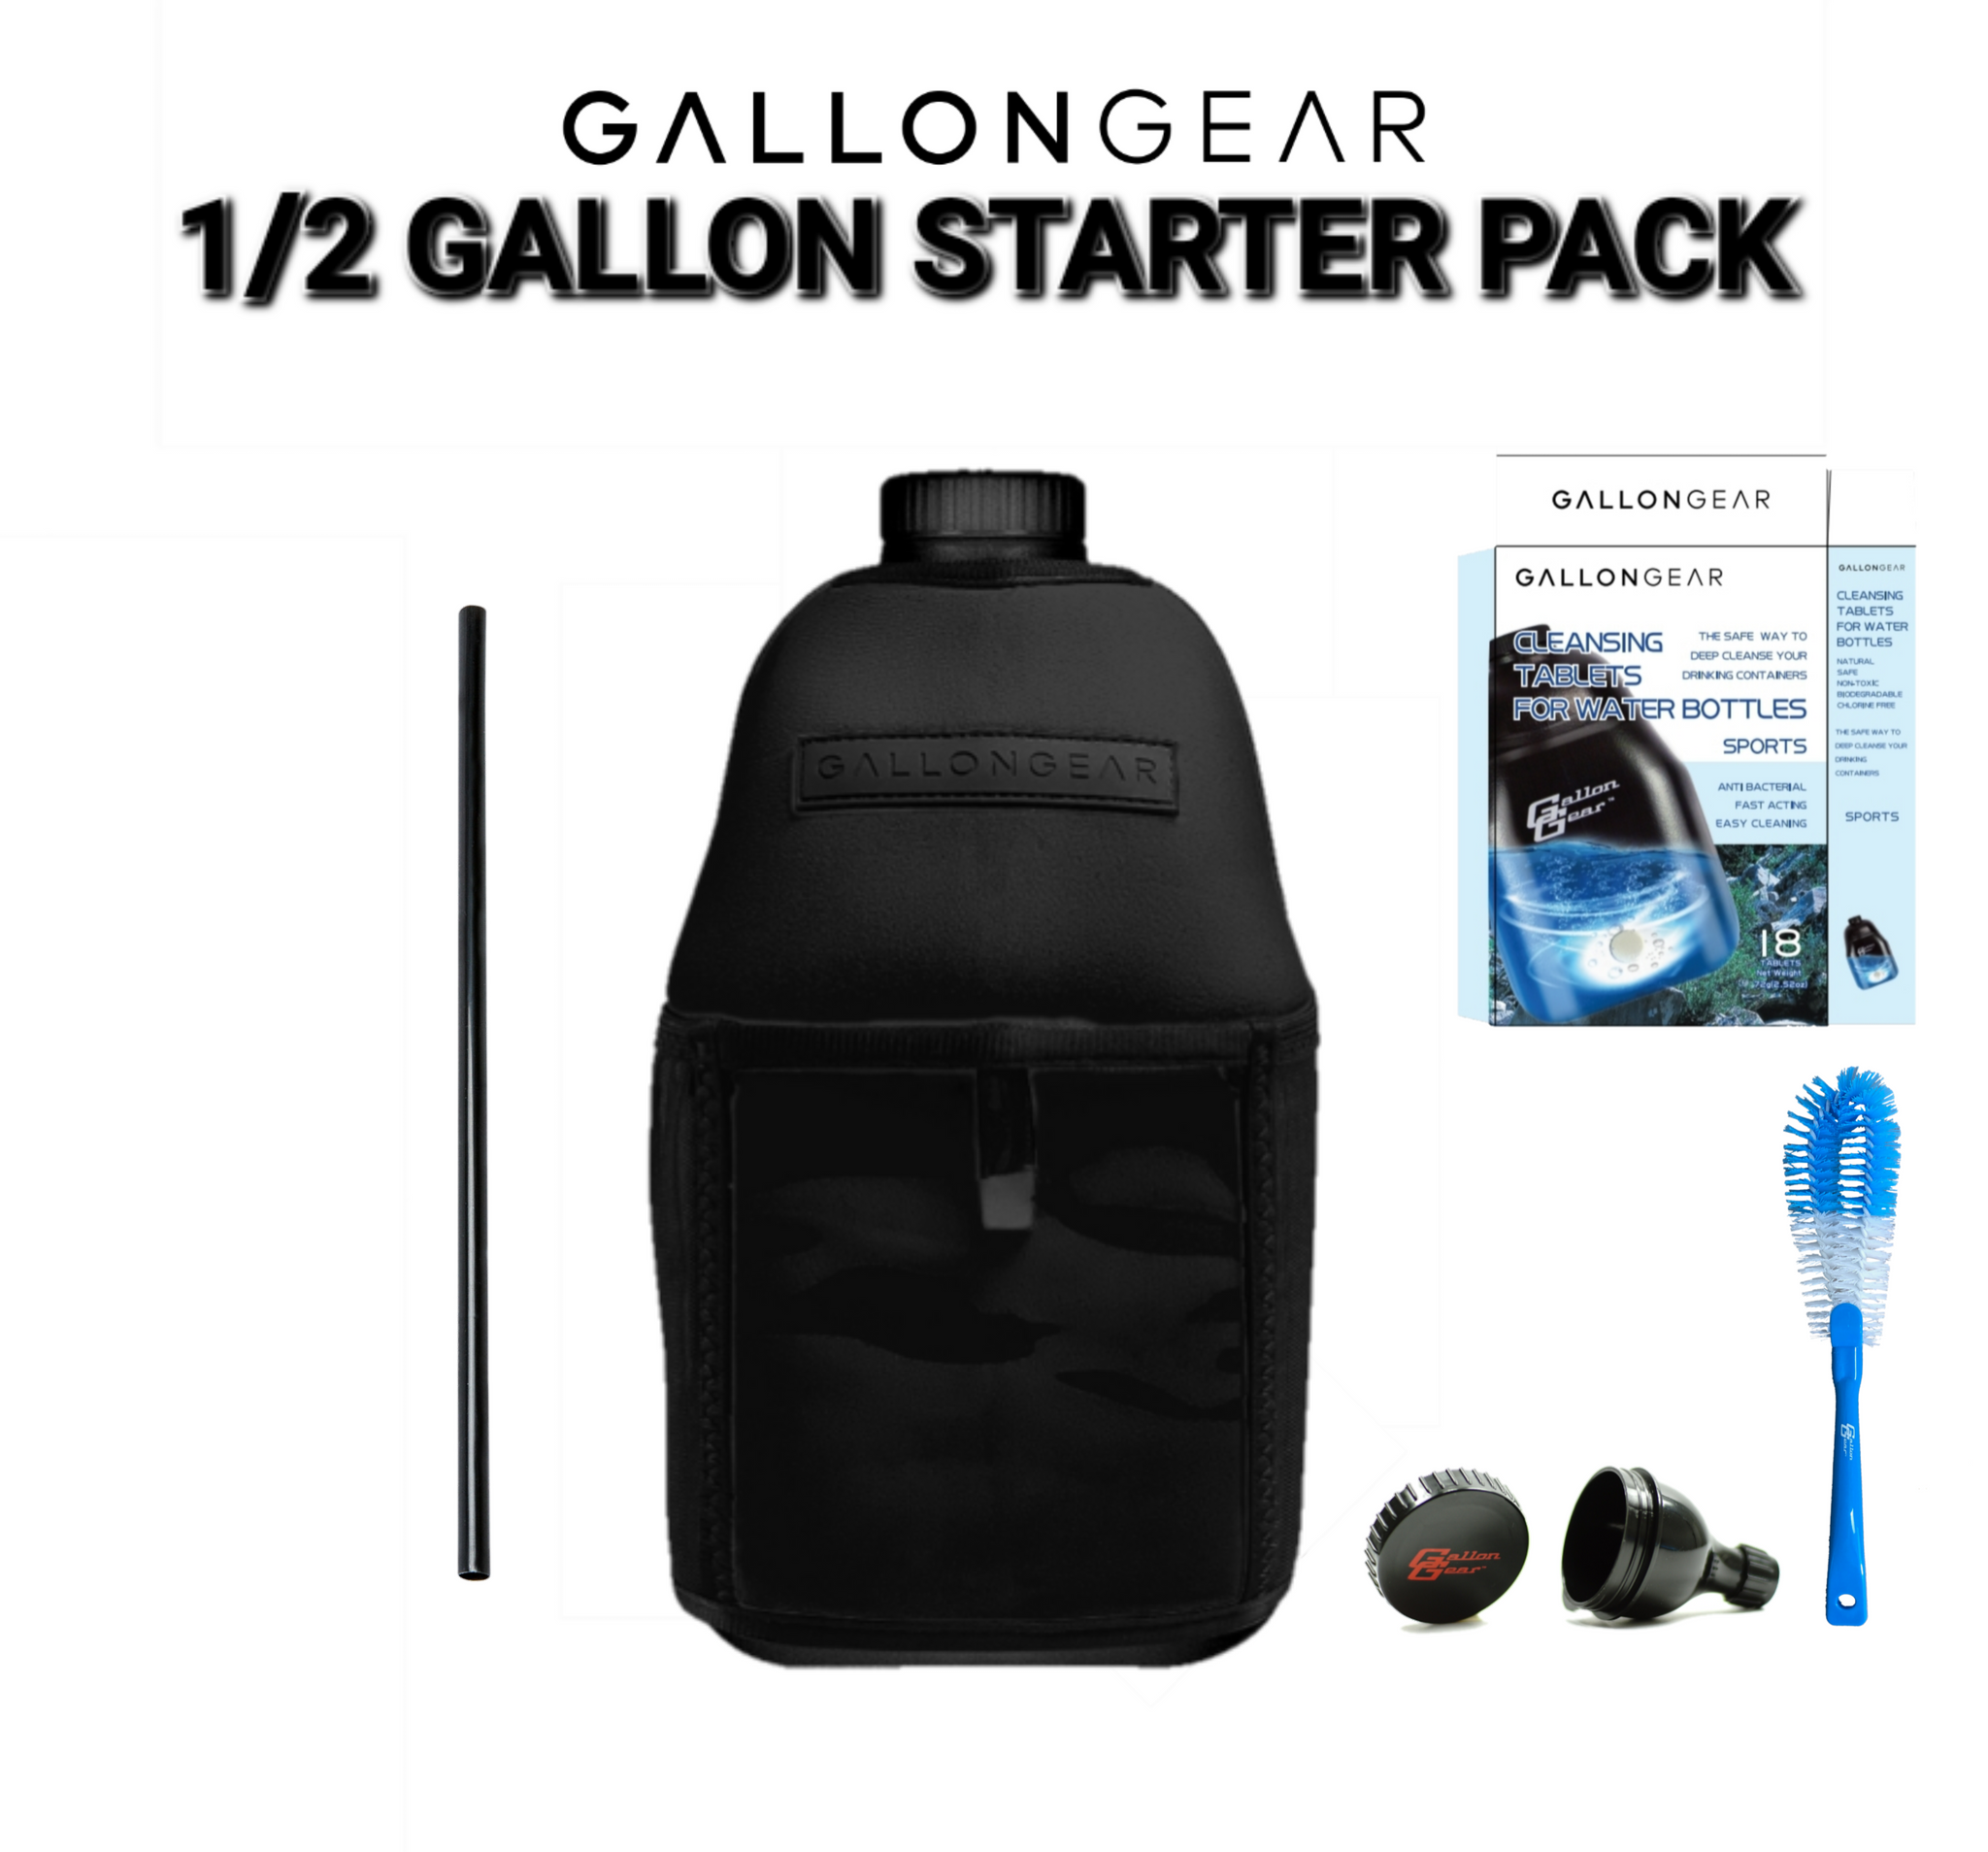 1/2 GALLON Blk/Blk Starter Pack